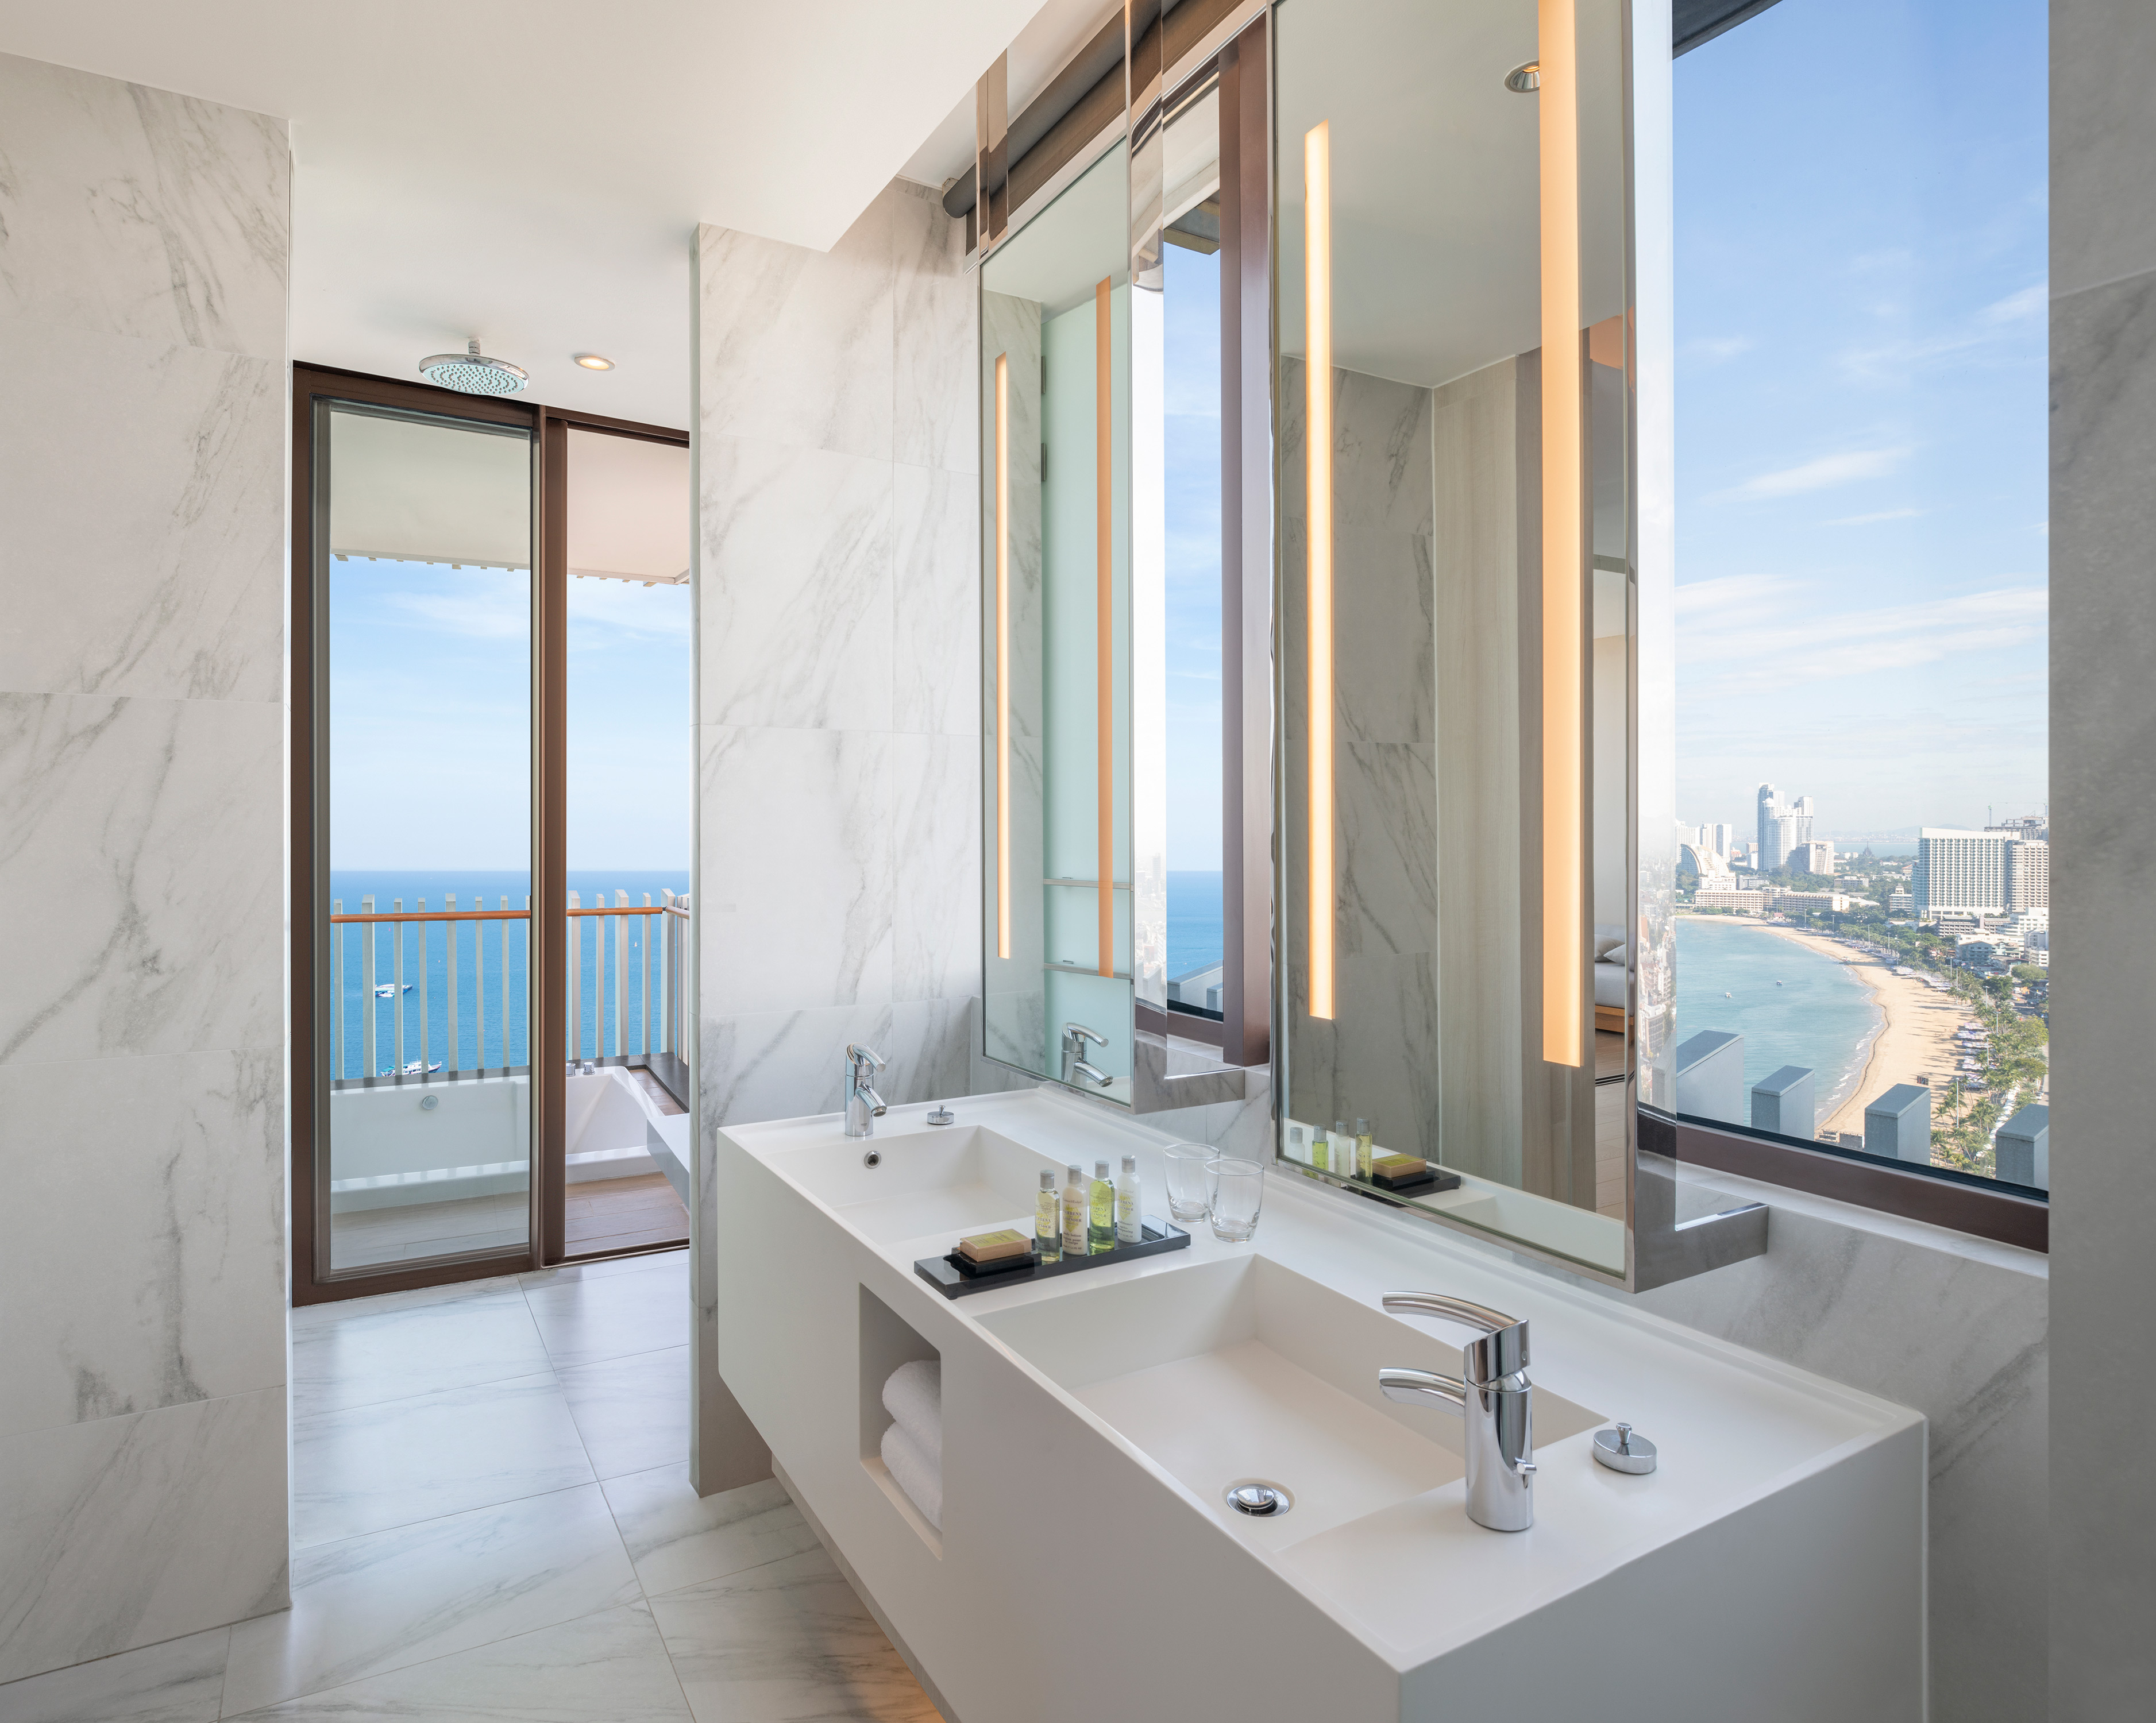 Dual Vanity Area in Bathroom with Ocean View